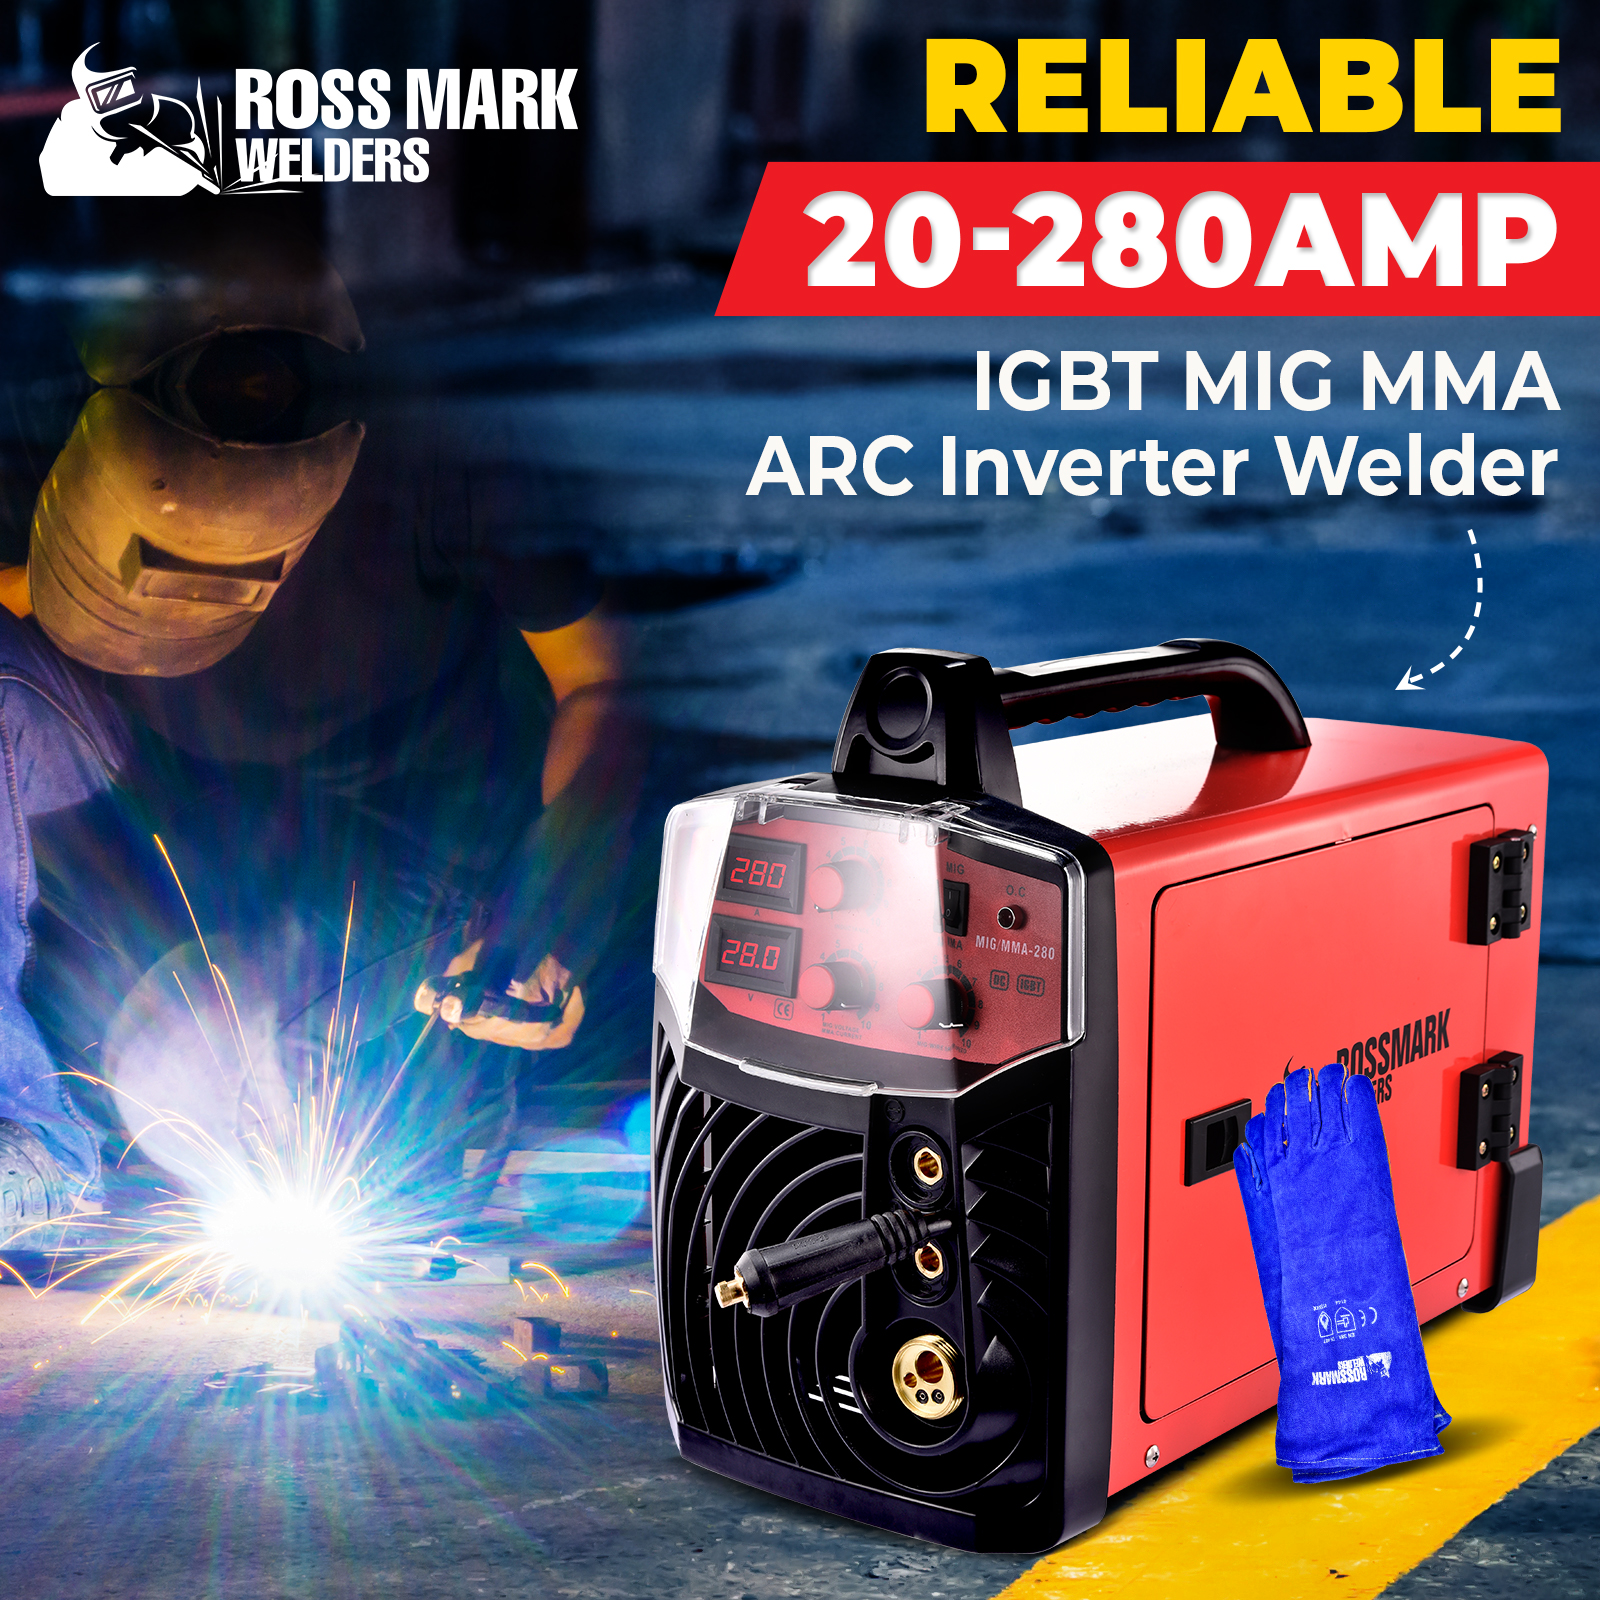 NEW ROSSMARK 280Amp Welder MIG ARC MAG Gas Gasless DC Welding Machine Inverter